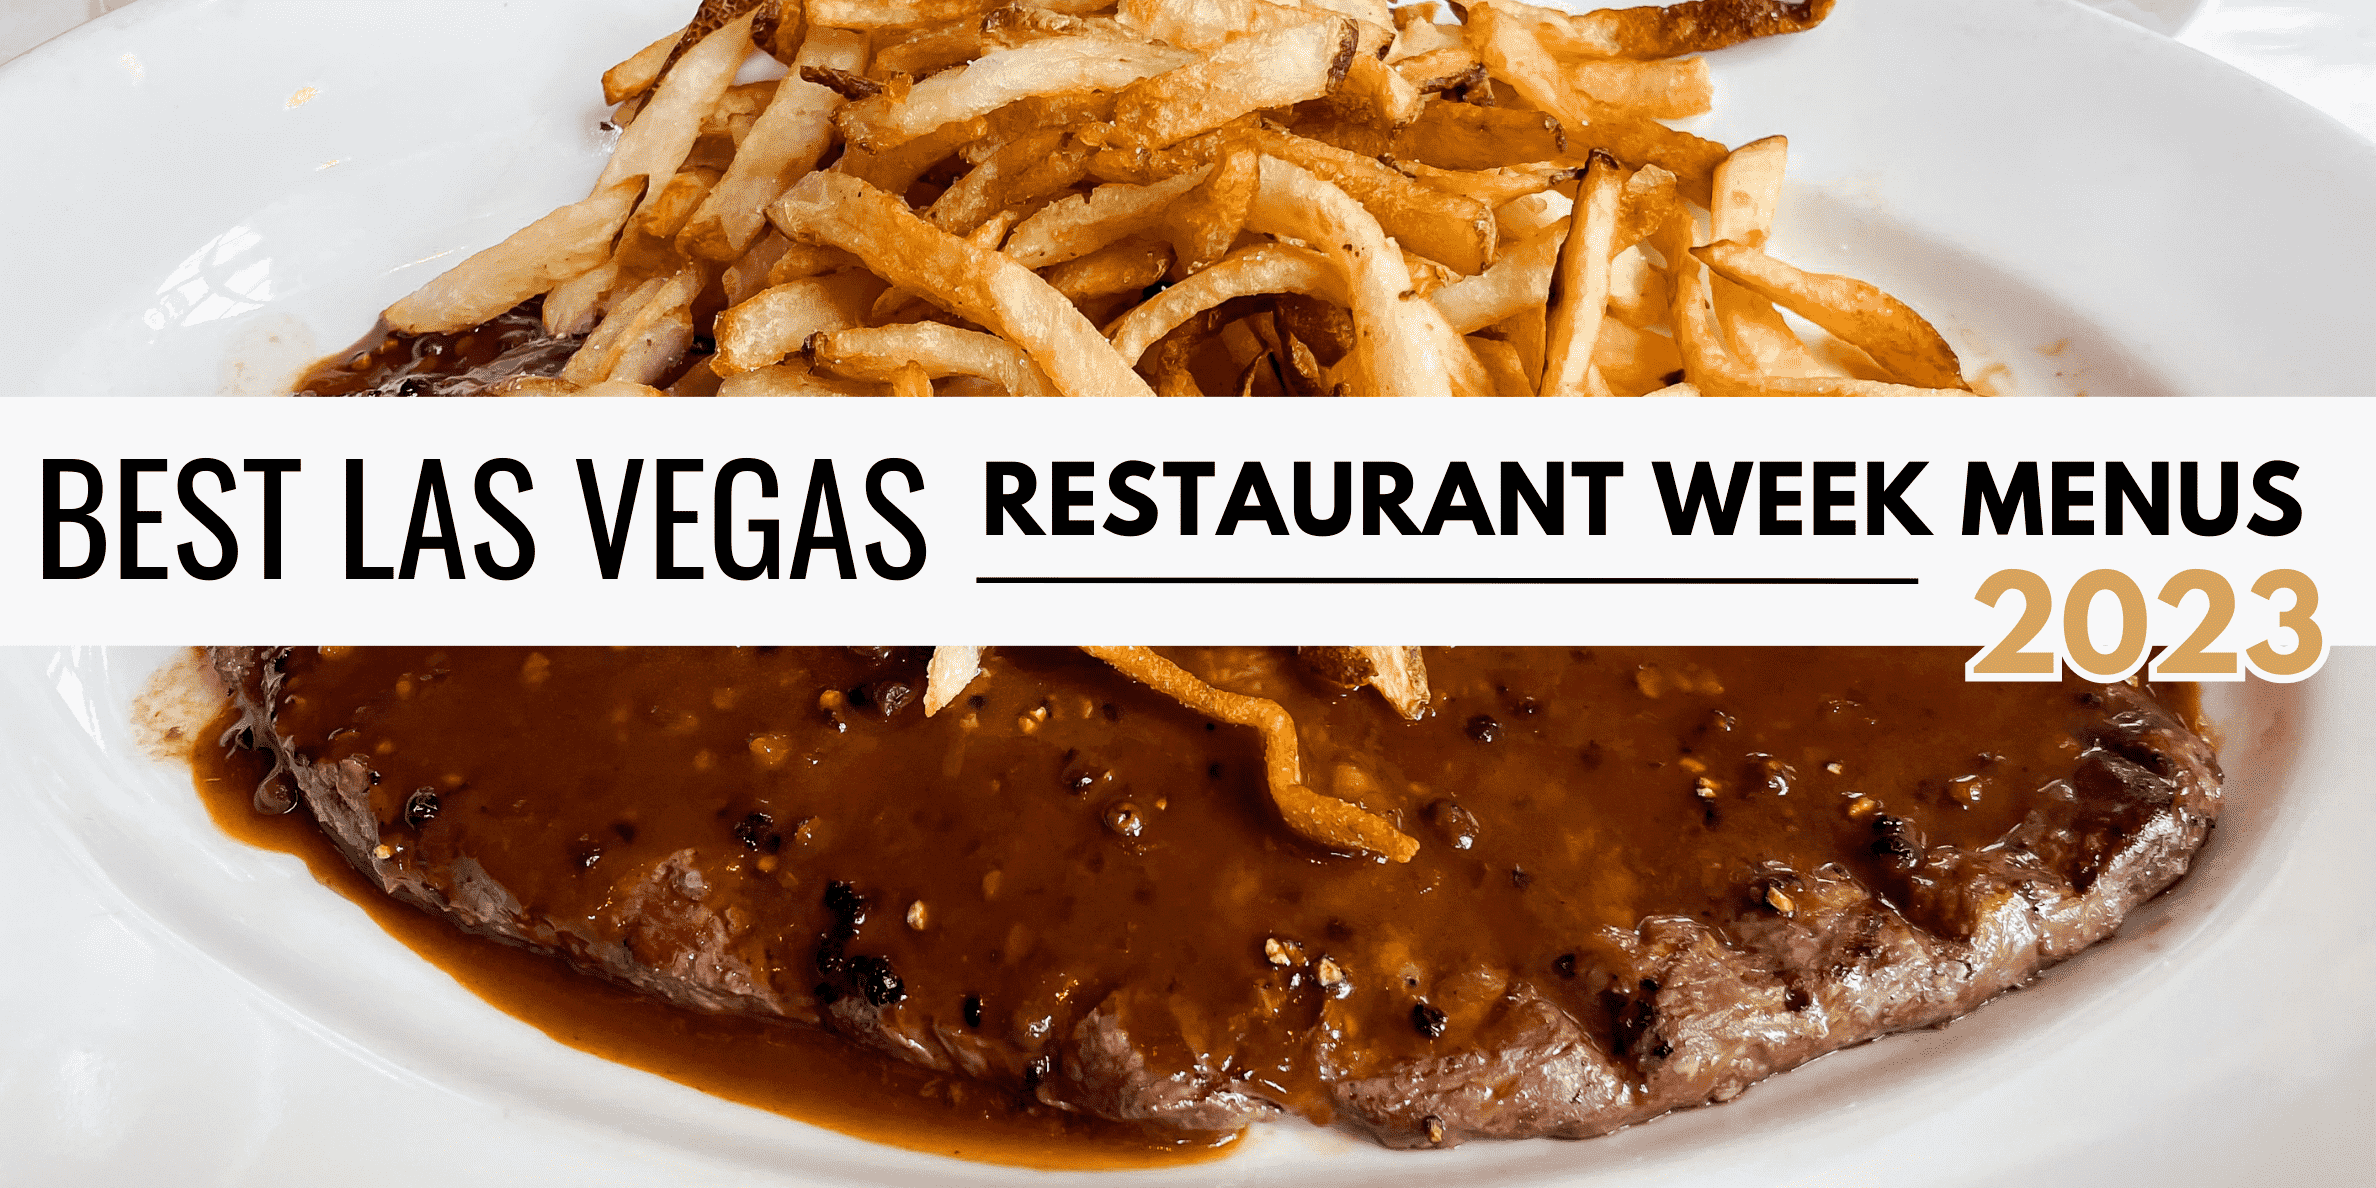 Best Las Vegas Restaurant Week Menus 2023